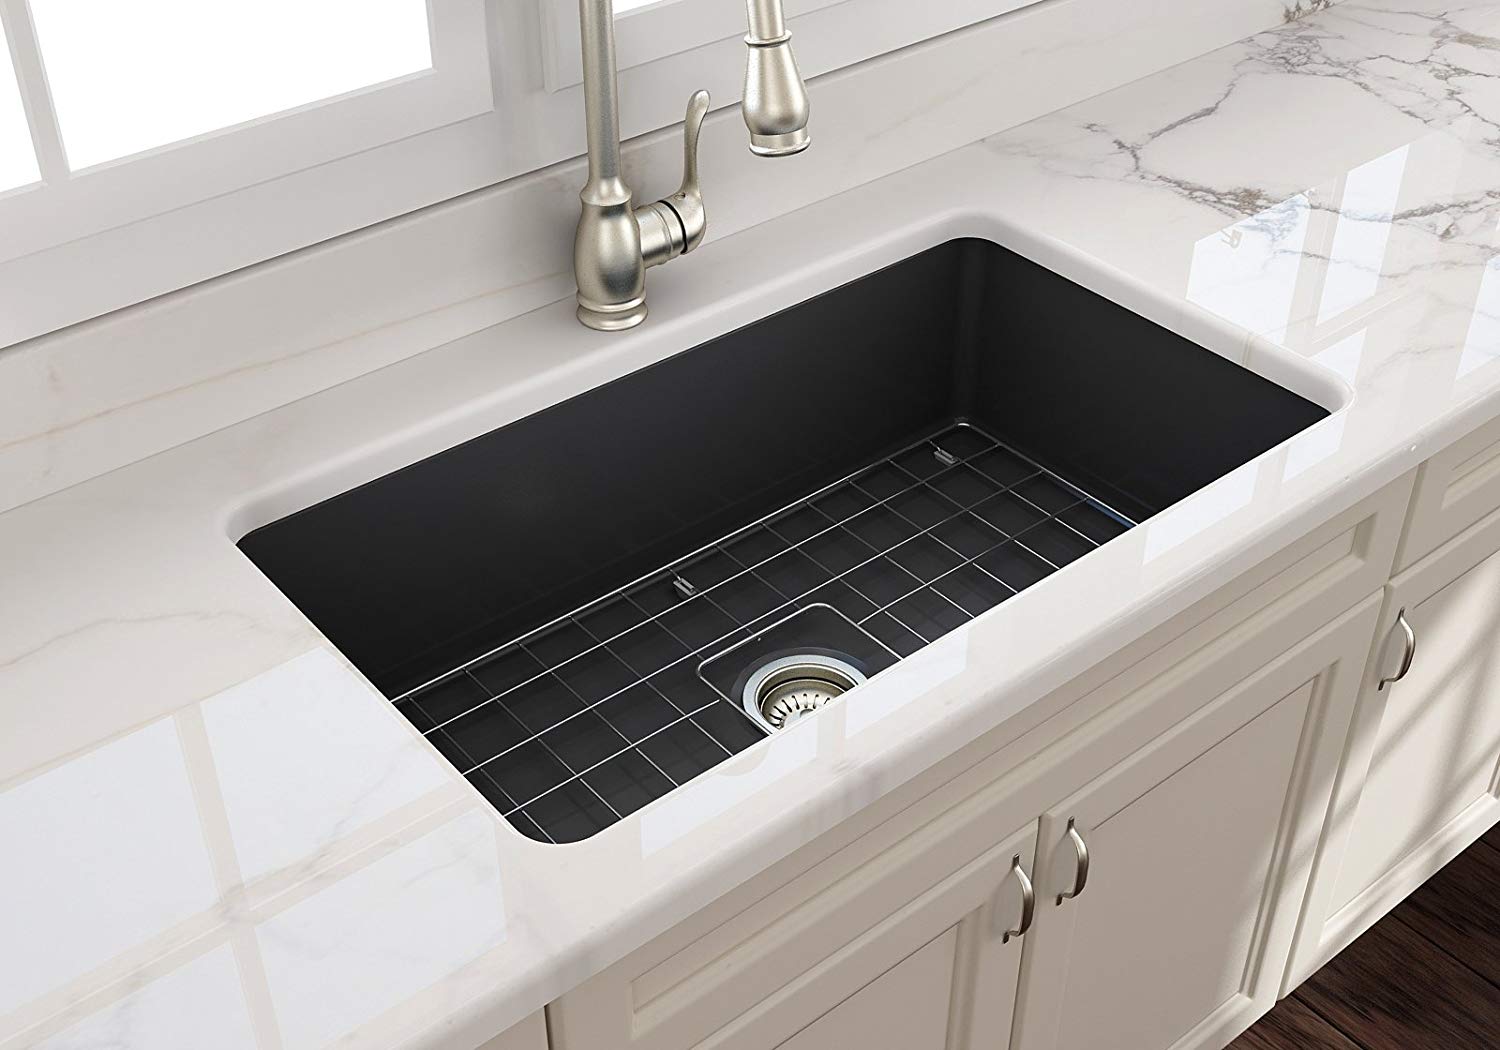 30x16 undermount kitchen sink